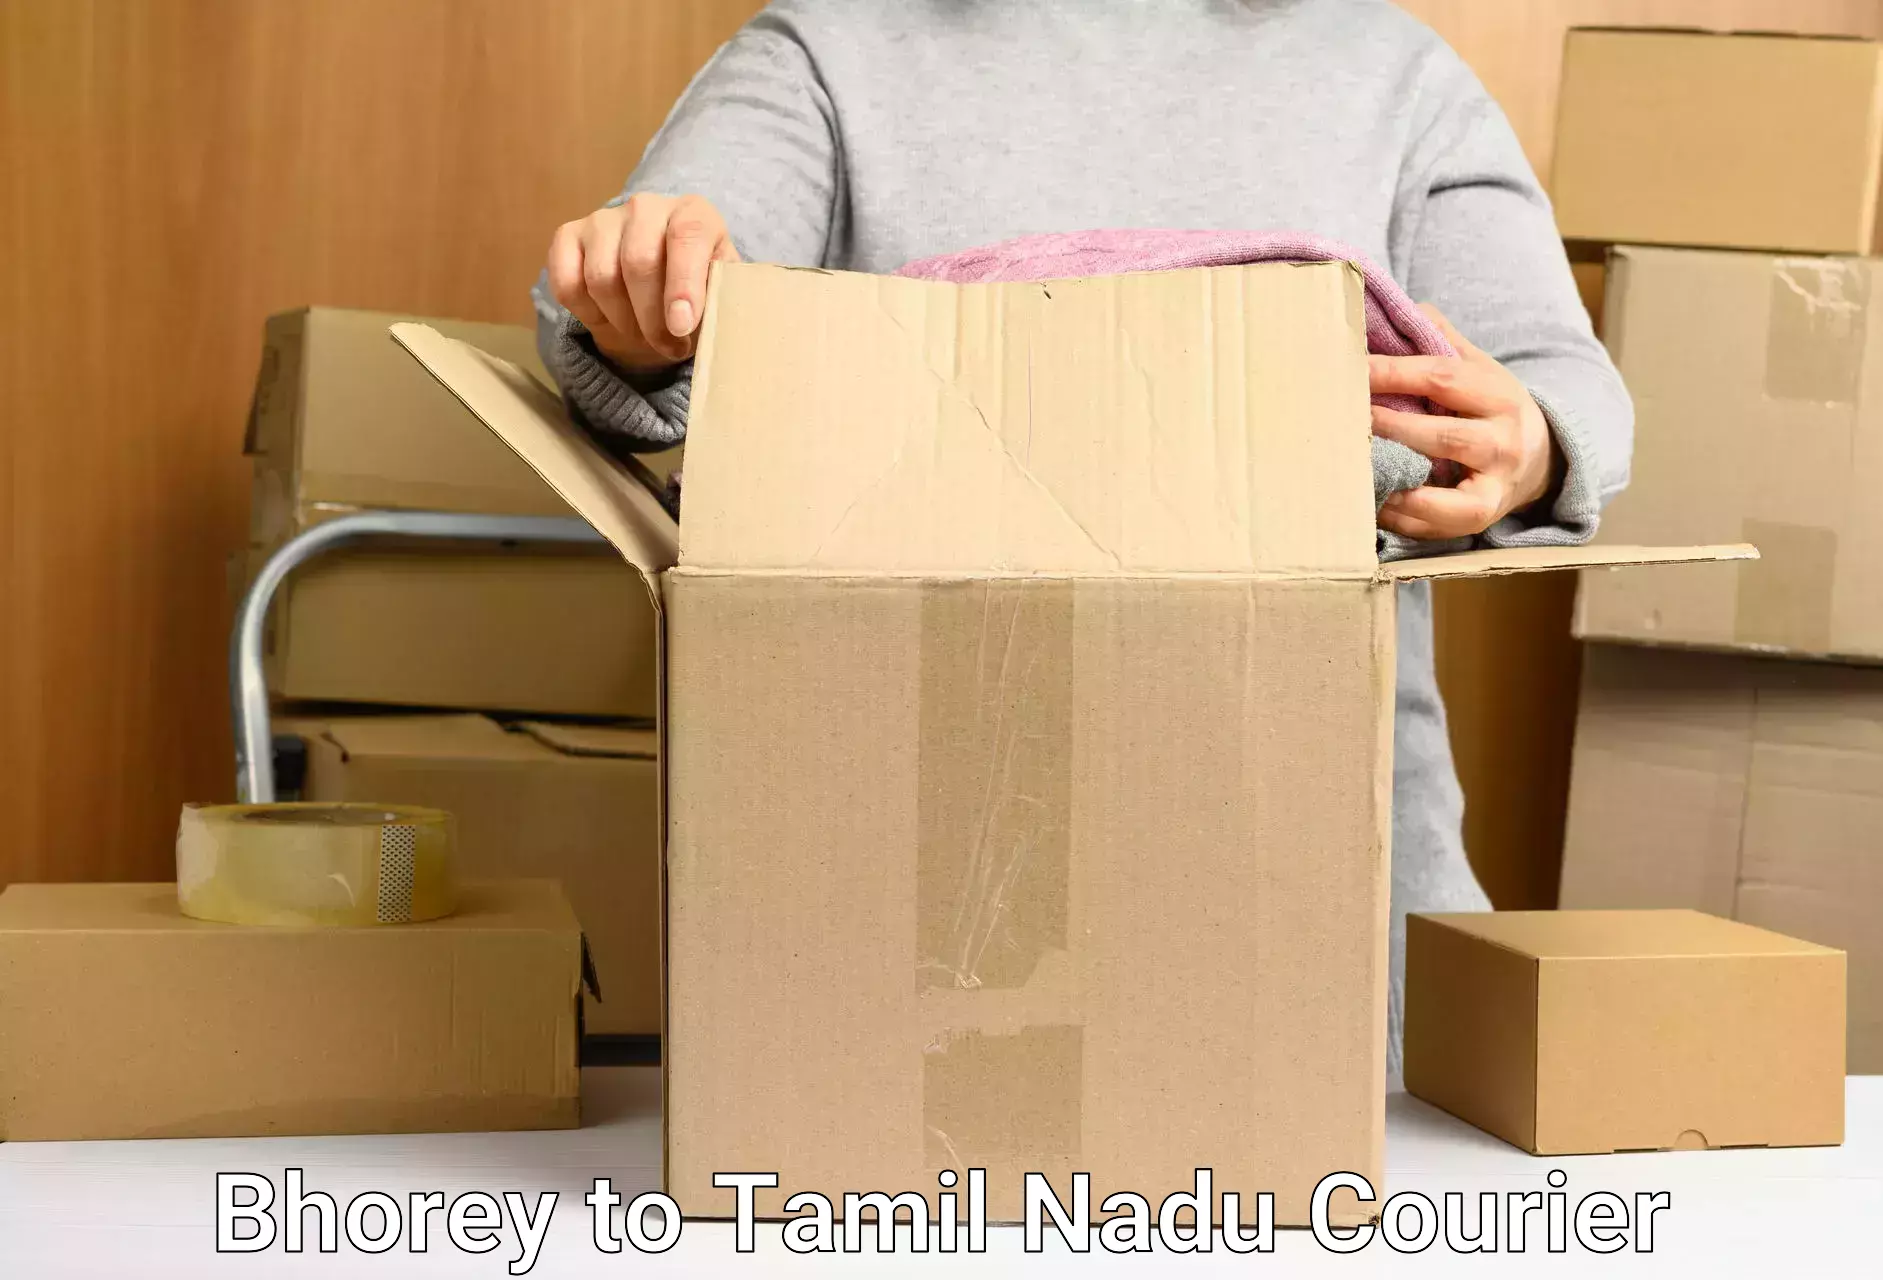 Customer-oriented courier services Bhorey to Ambattur